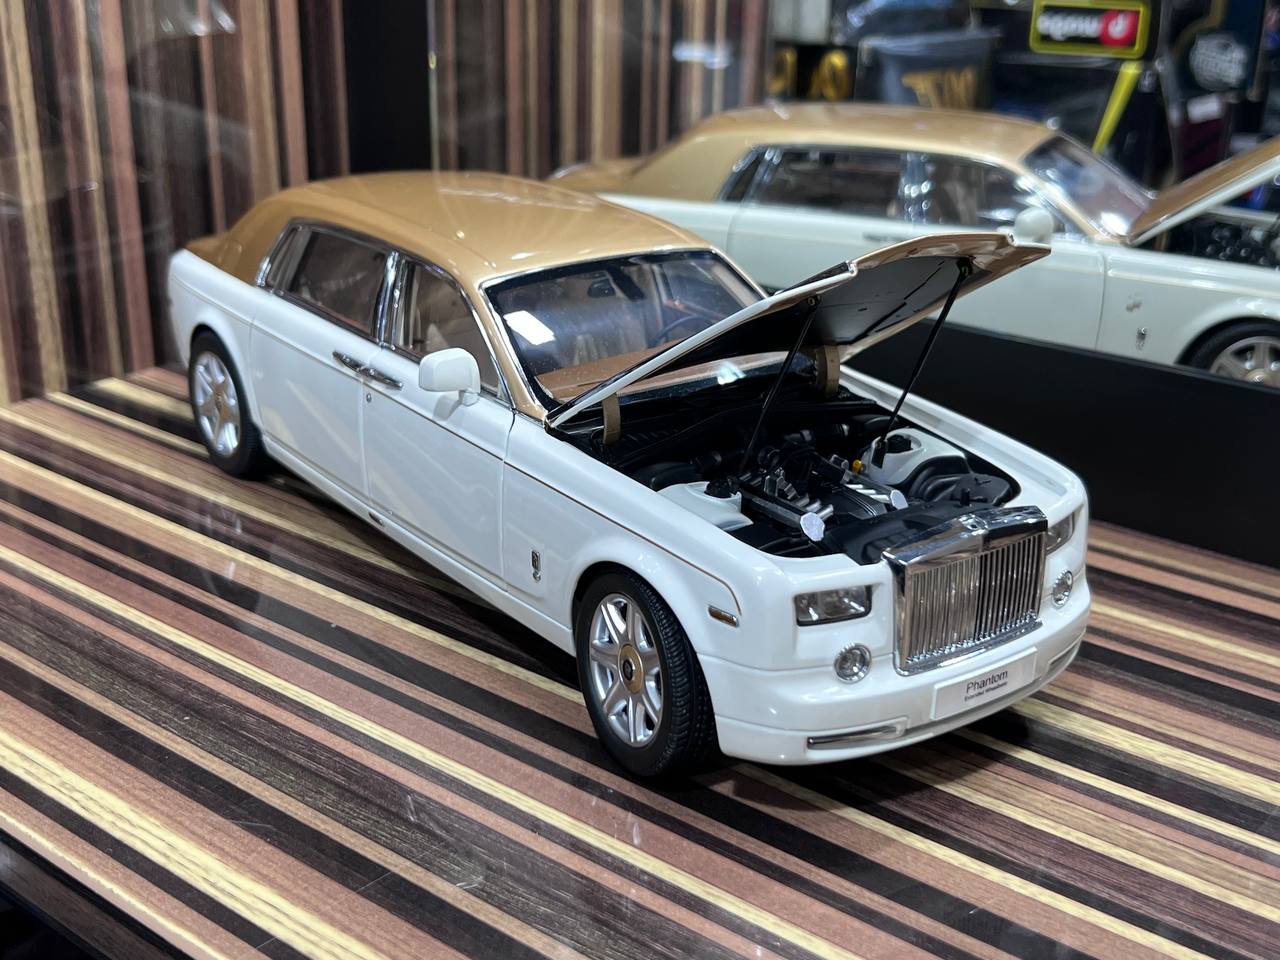 1/18 Diecast Rolls-Royce Phantom EWB Kyosho Scale Model Car